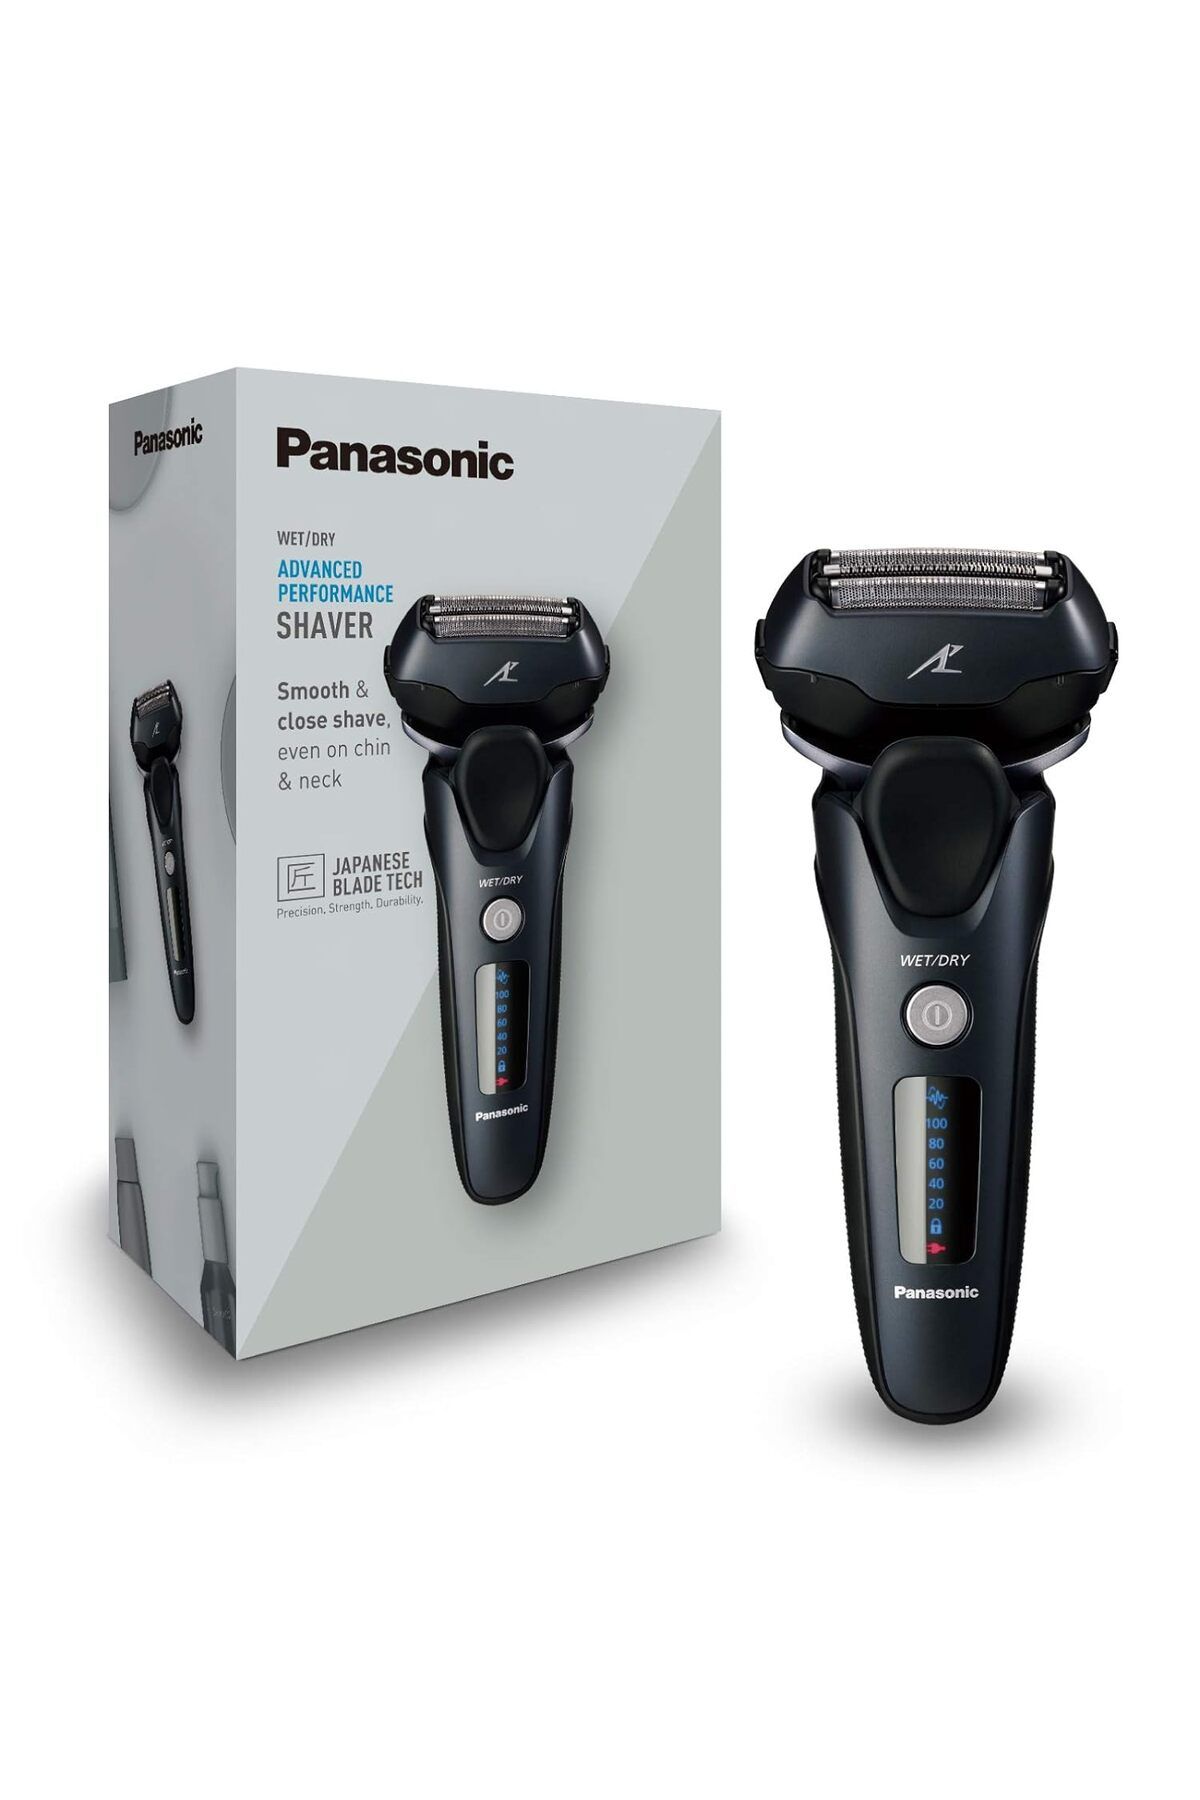 Panasonic Lineer Motorlu Erkek Islak/Kuru Elektrikli Tıraş Makinesi, Uzun Saç Düzelticili 3 Tıraş Başlığı